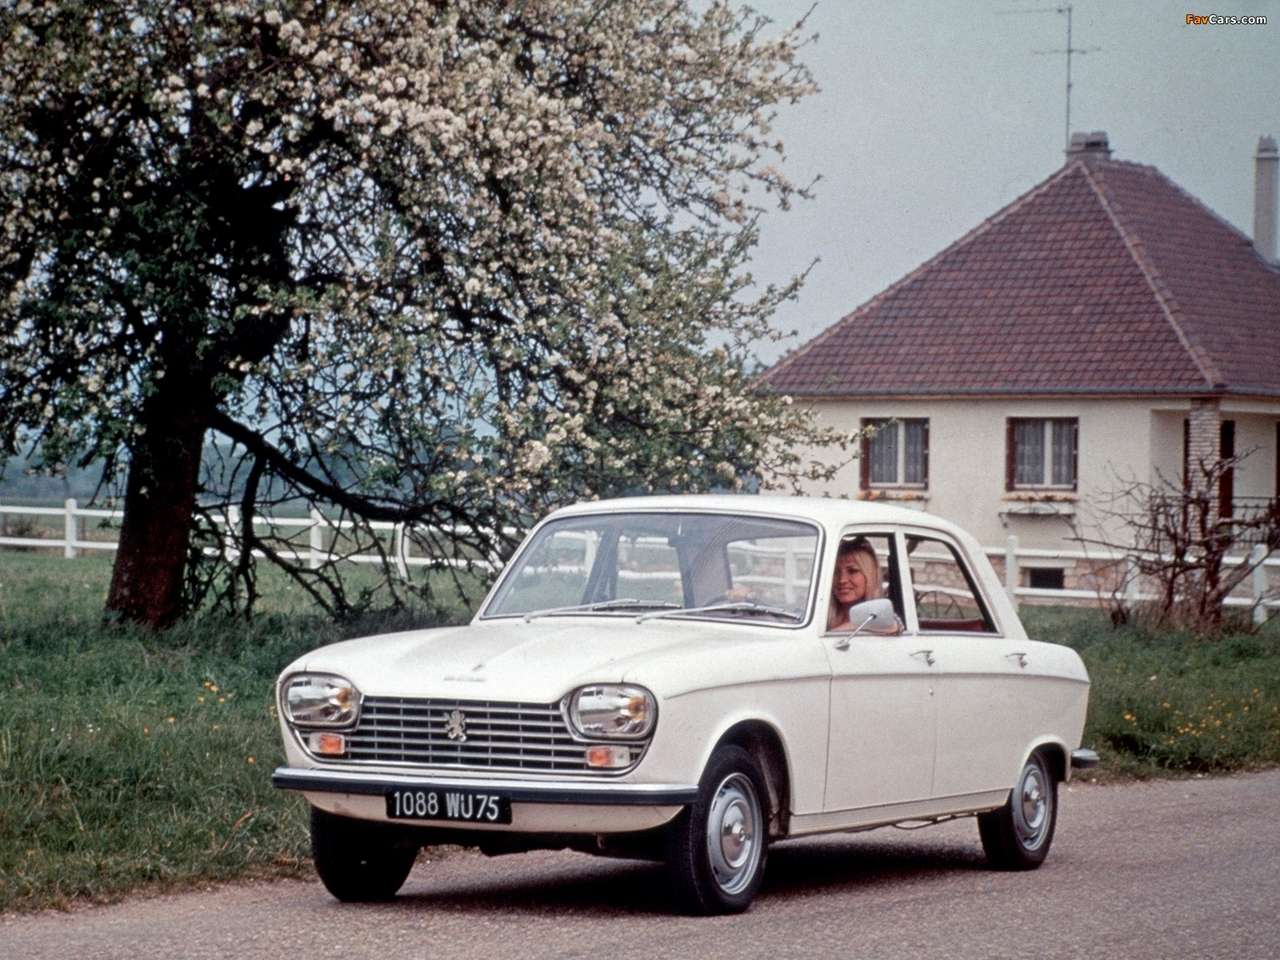 1965 Peugeot 204 online puzzle